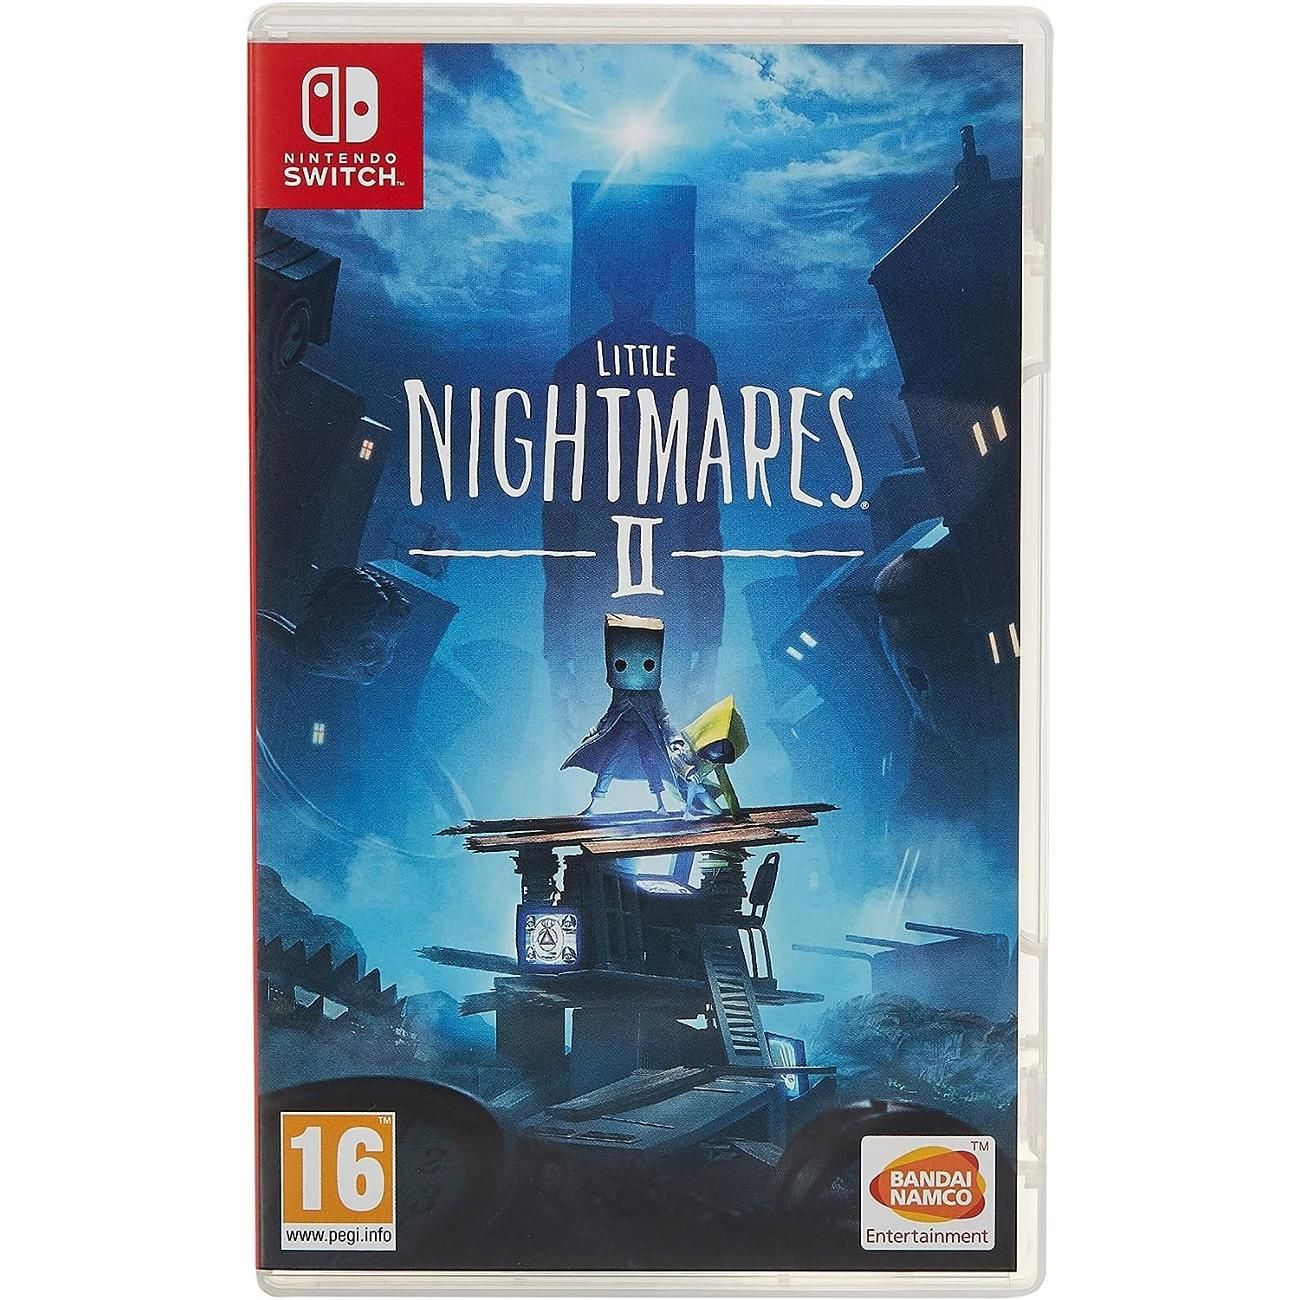 Little nightmares nintendo. Nightmares Nintendo Switch Cover.